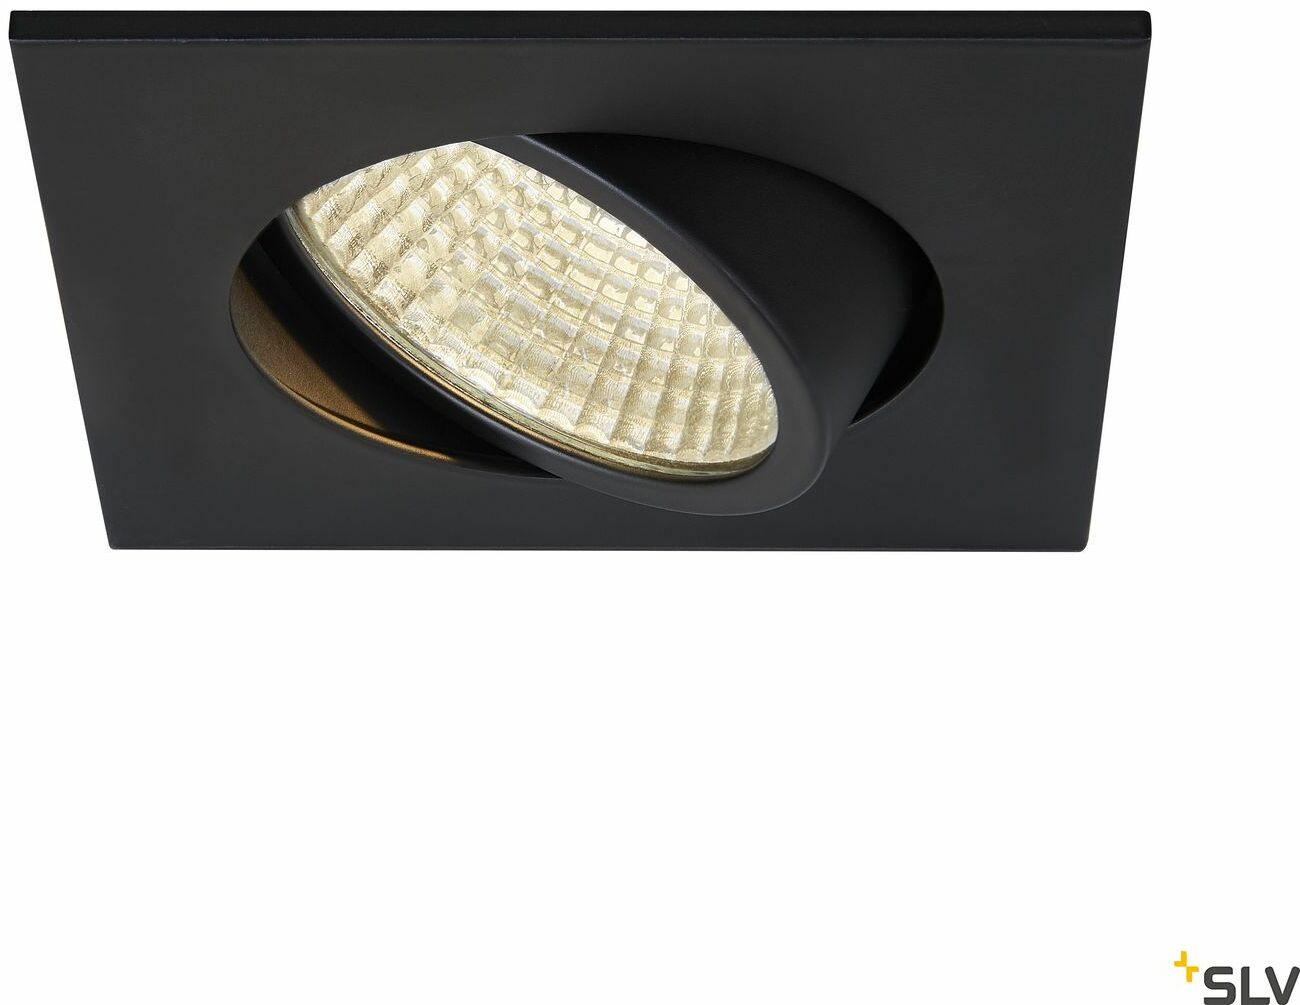 NEW TRIA 68 I CS lampa sufitowa wpuszczana LED,, kolor czarny, kwadratowa, 3000K, 38 , z zasilaczem i sprężynami zaciskowymi